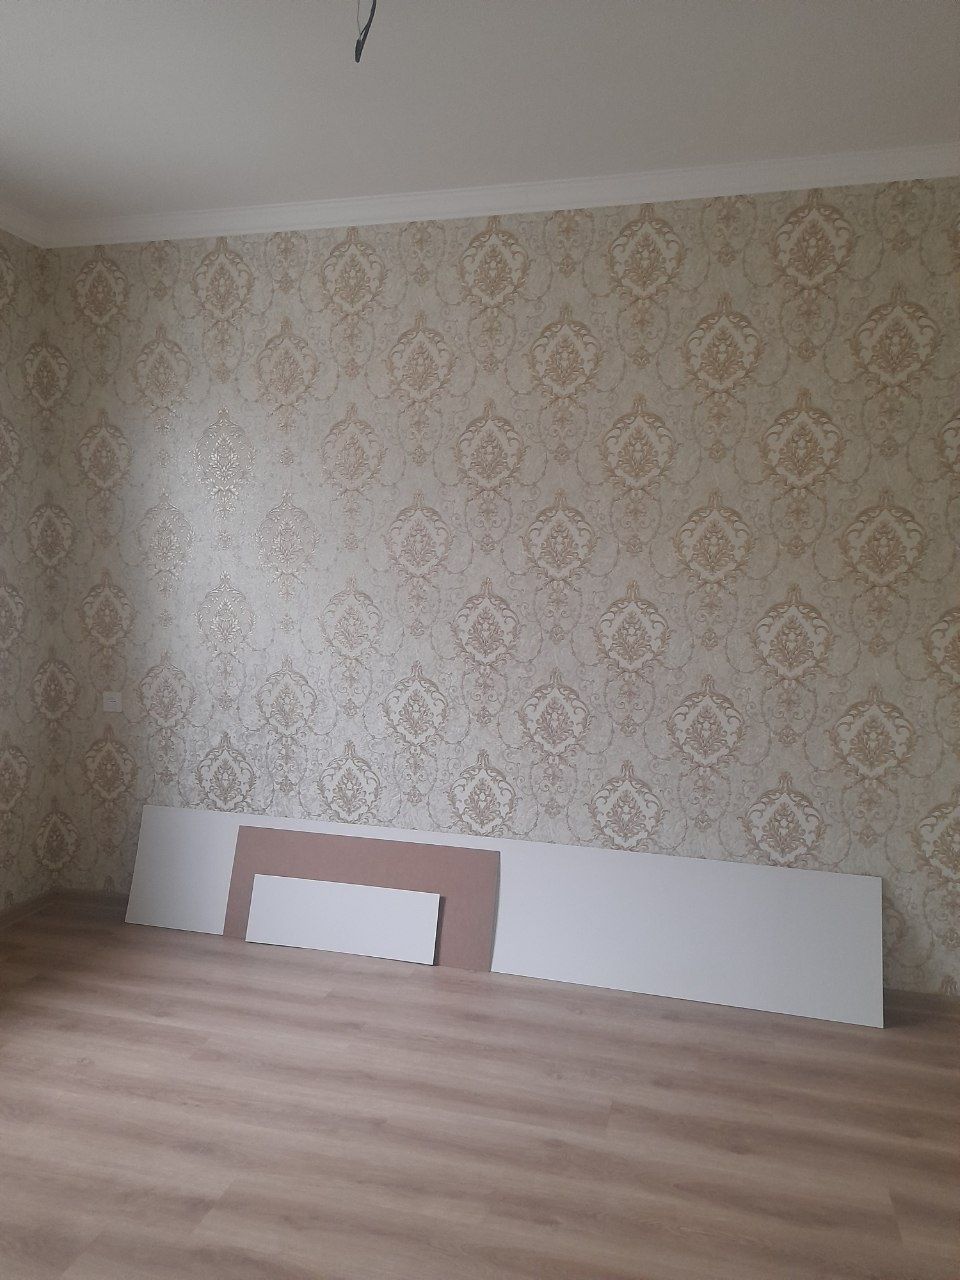 ПРОДАЖА двух комнатной квартиры на Азербайджанском центре. 40m2.